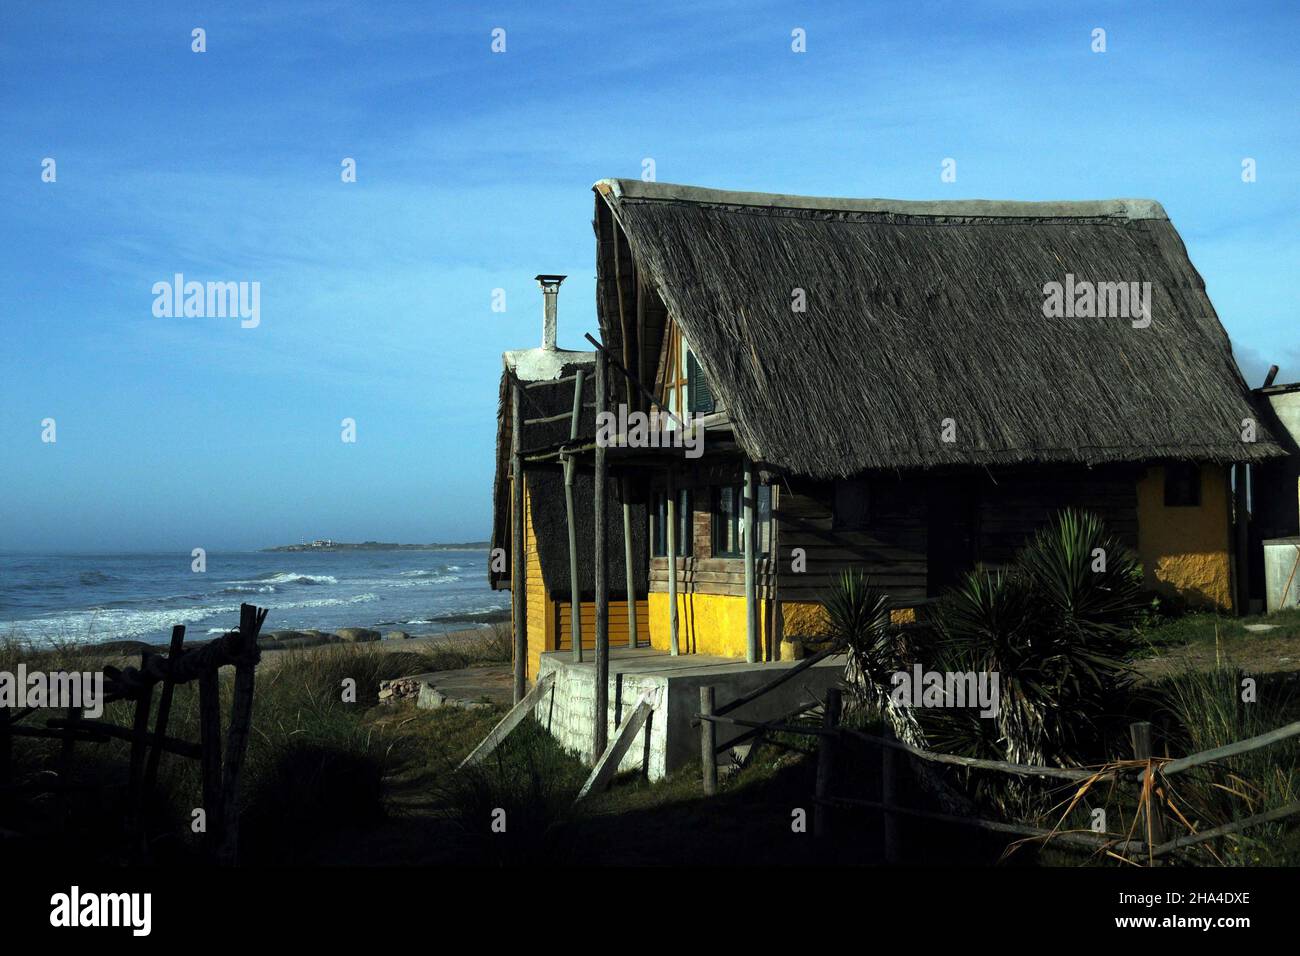 Coastal landscape of Punta del Diablo Stock Photo